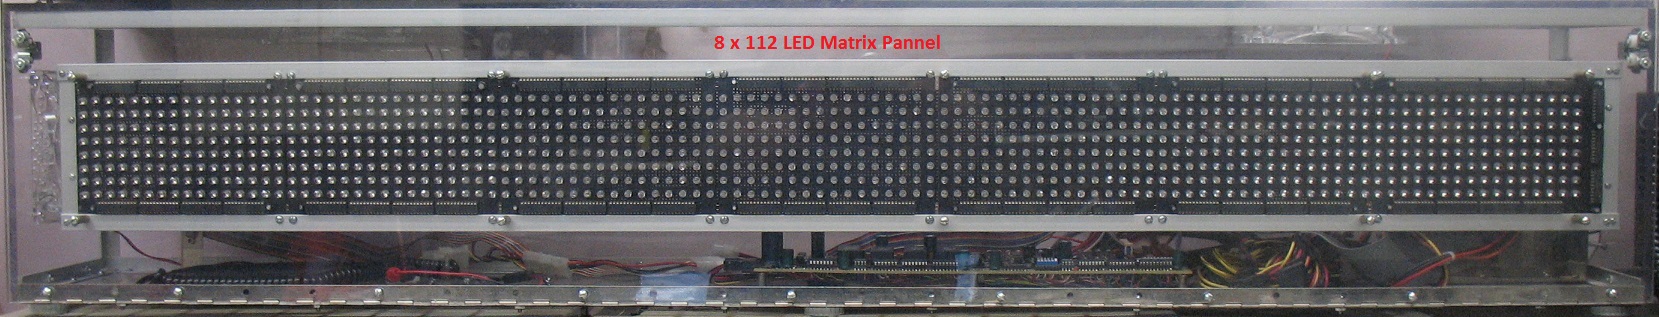 LED Pannel Photo